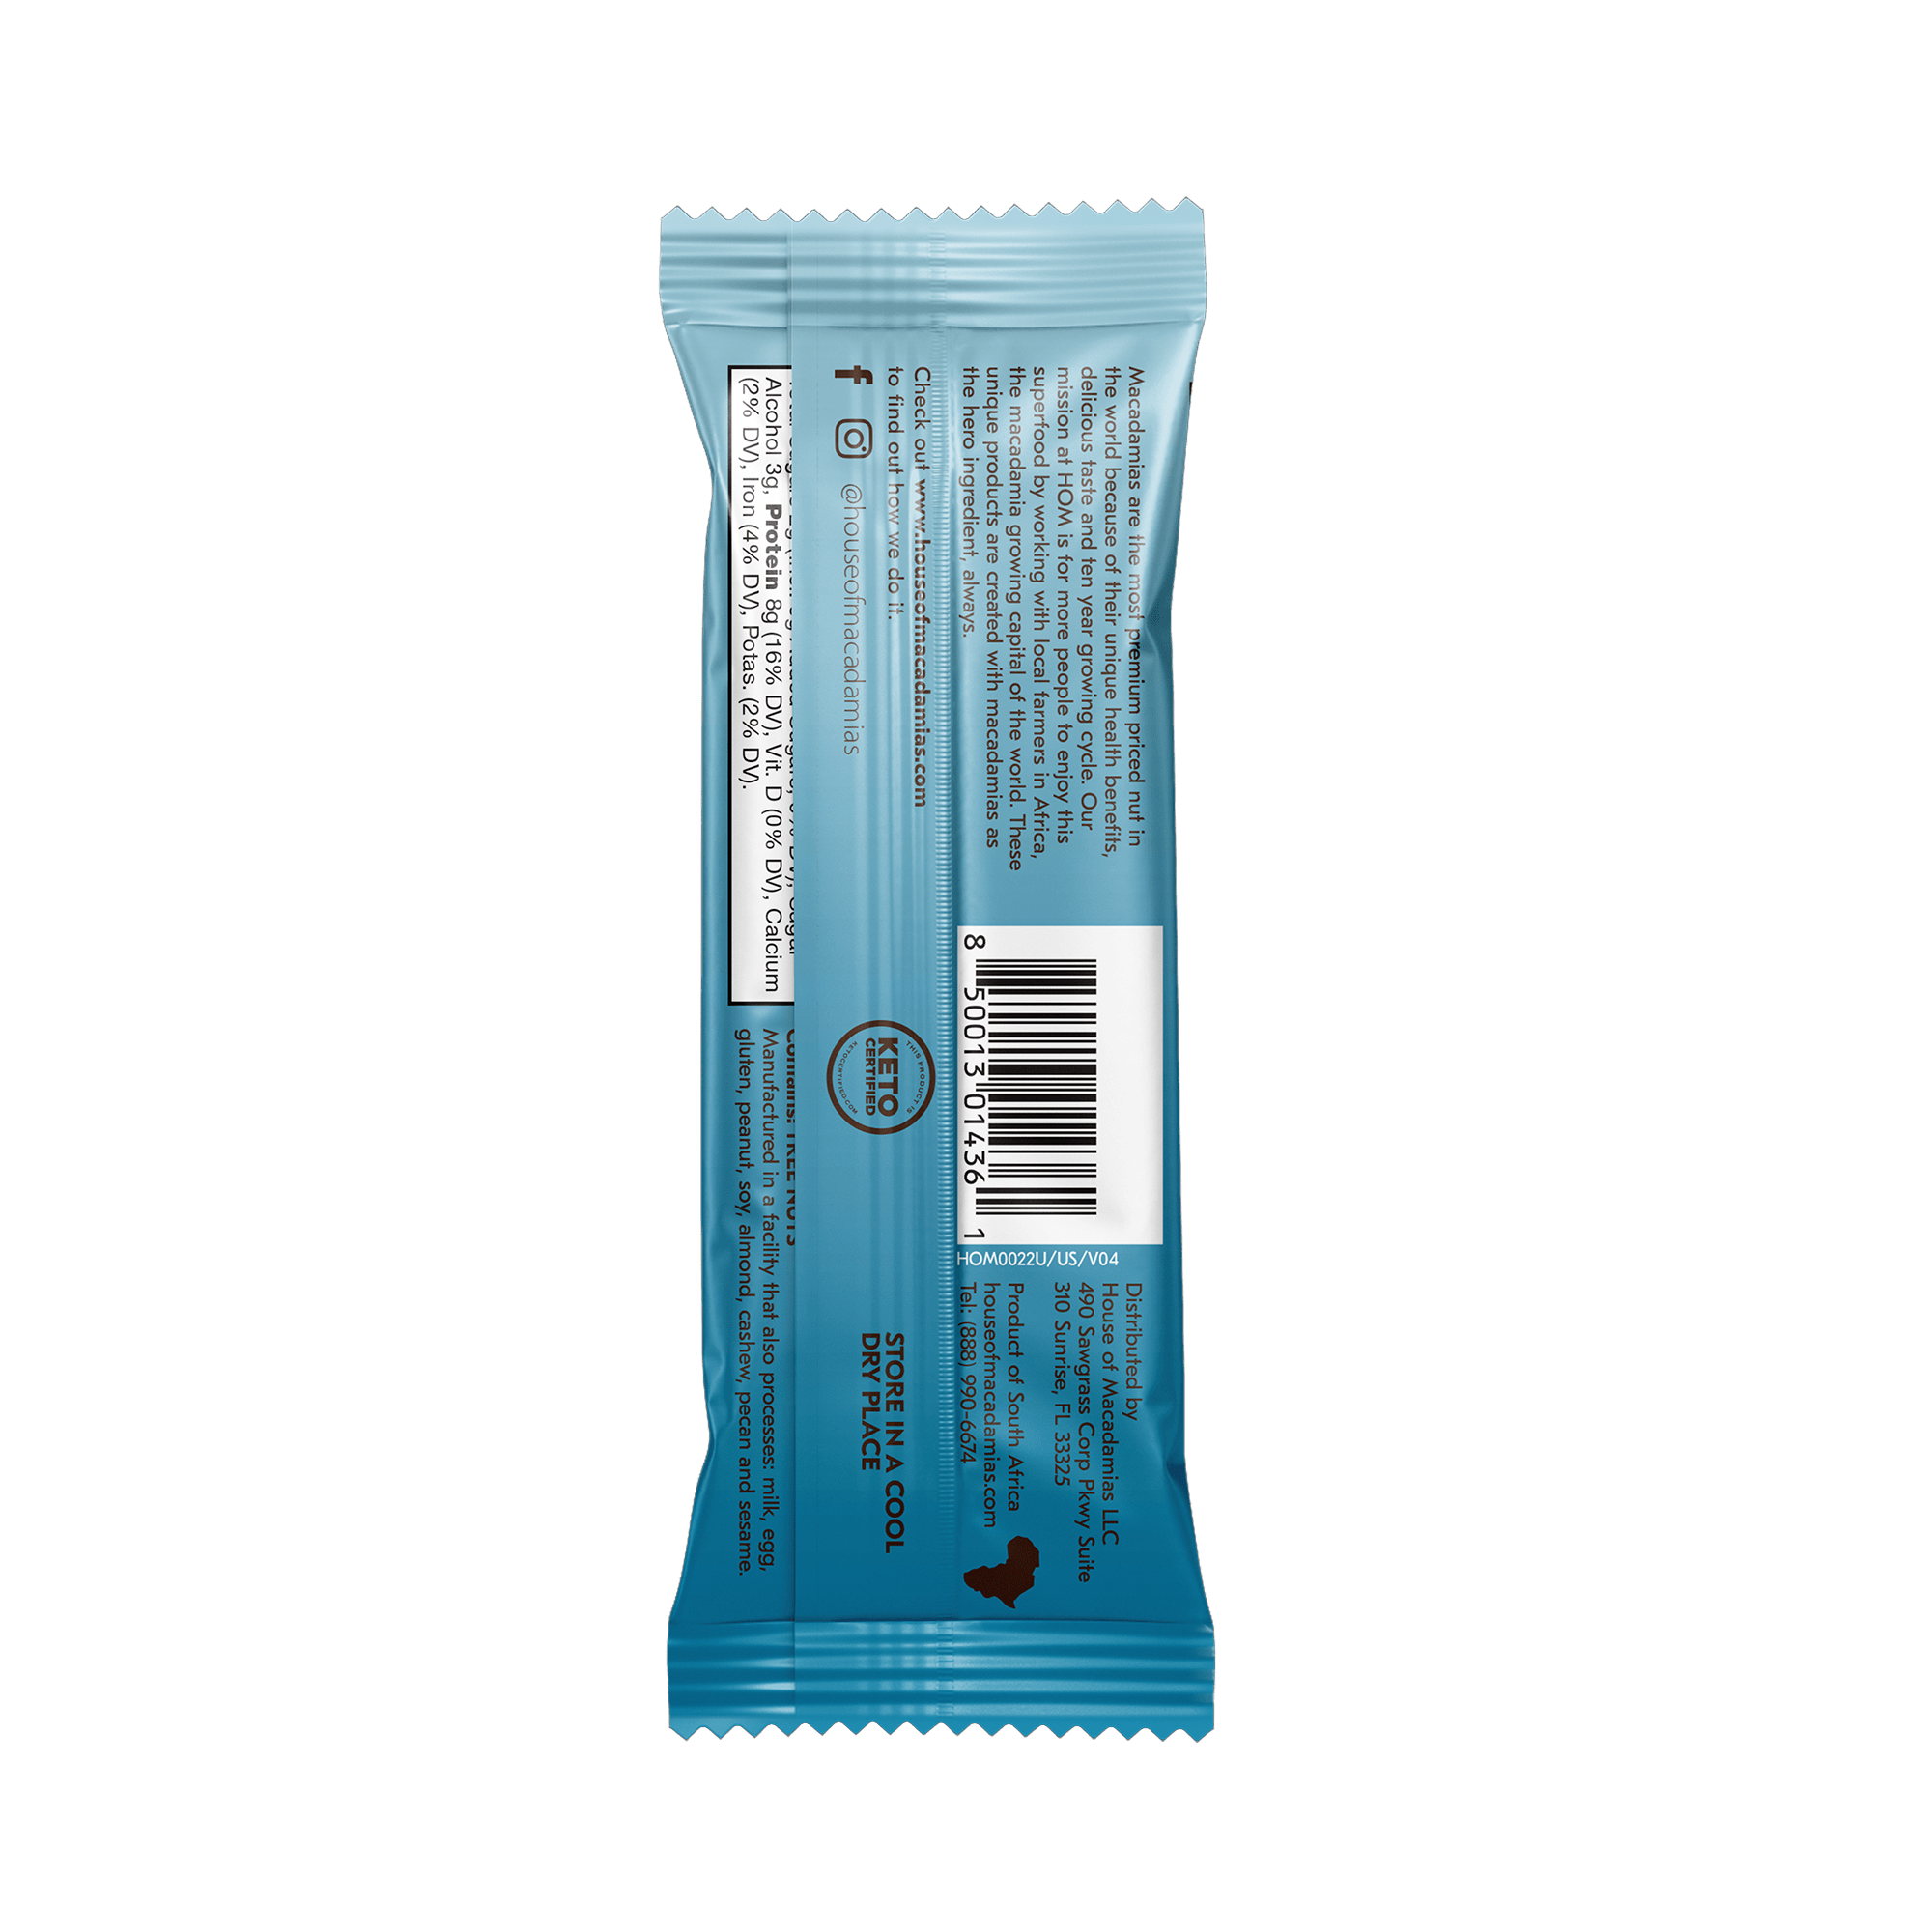 Chocolate Coconut Macadamia Protein Bars (12 Bars)